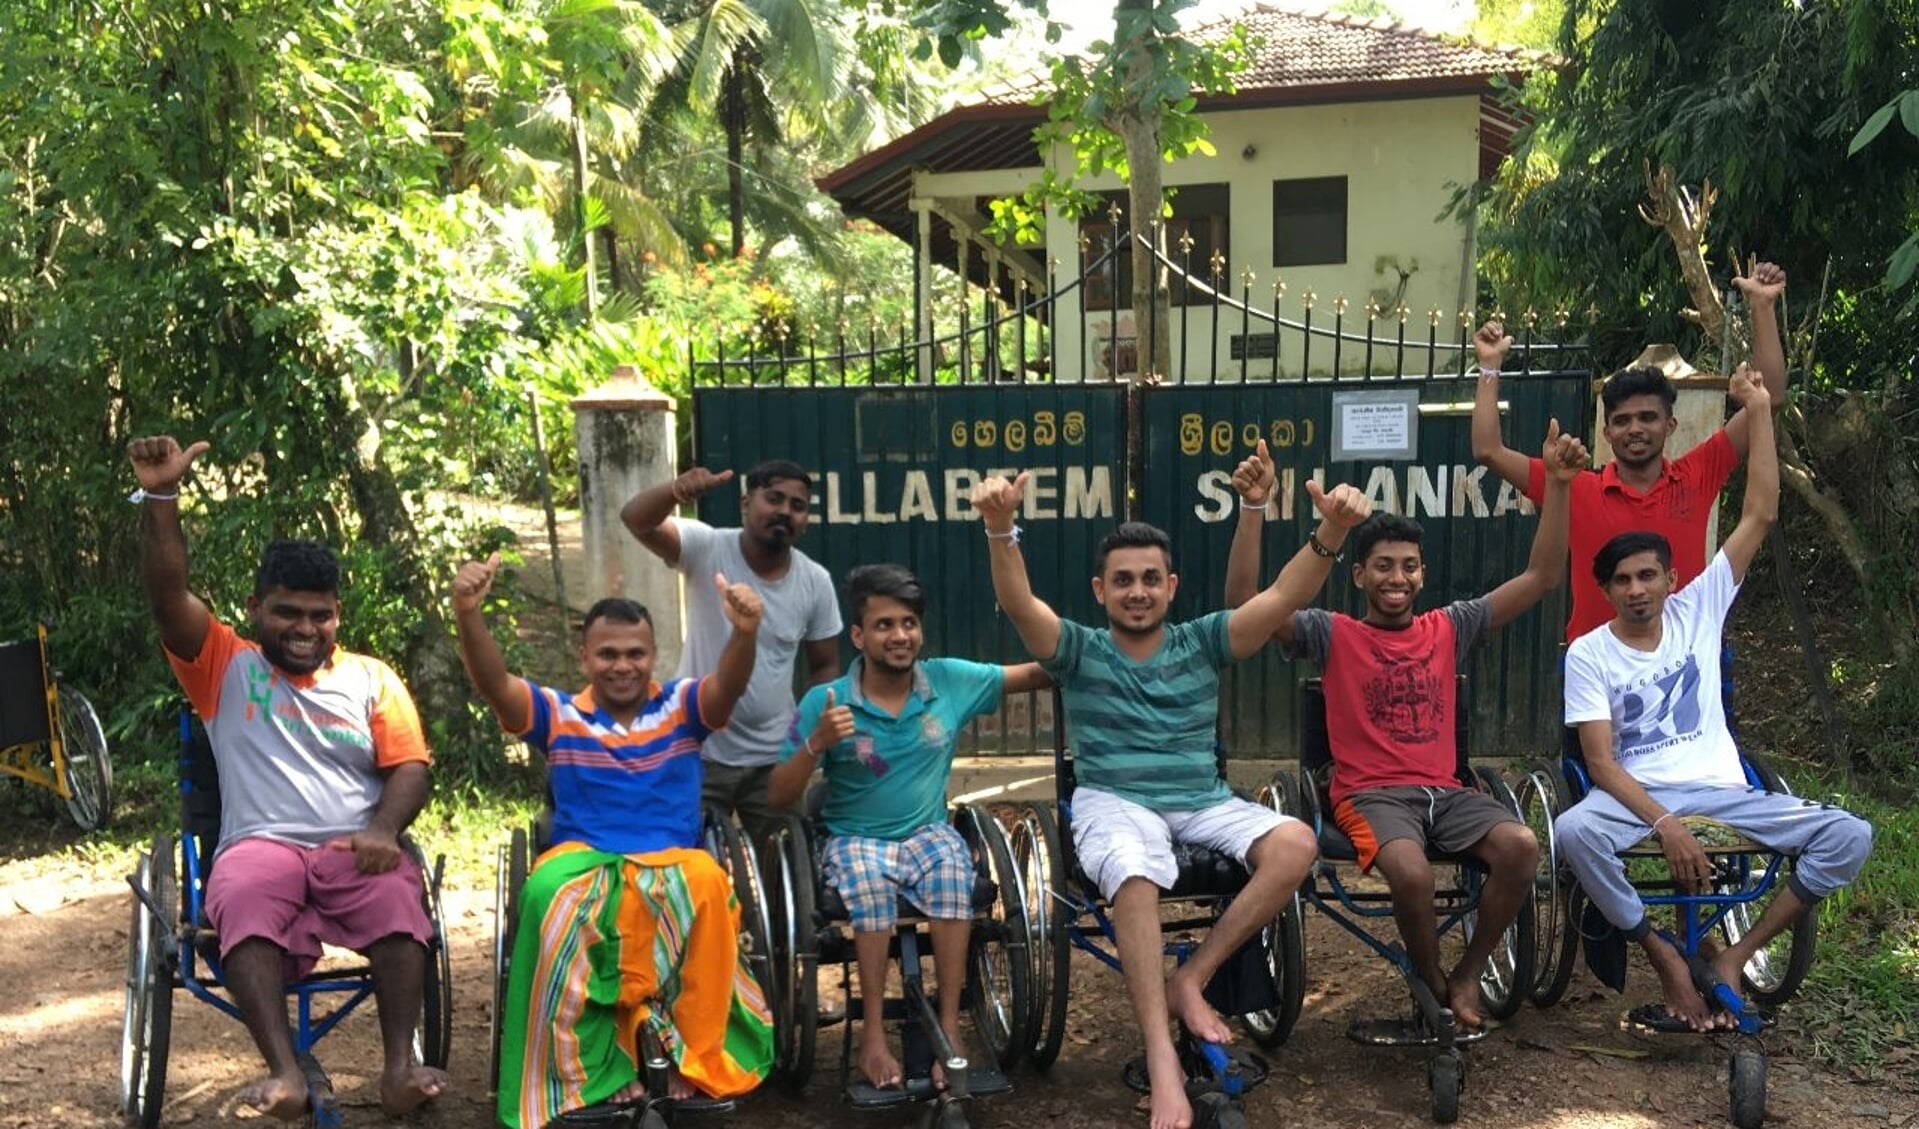 Dubbel kansarm een leven opbouwen op Sri Lanka is een hard bestaan als je gehandicapt bent.